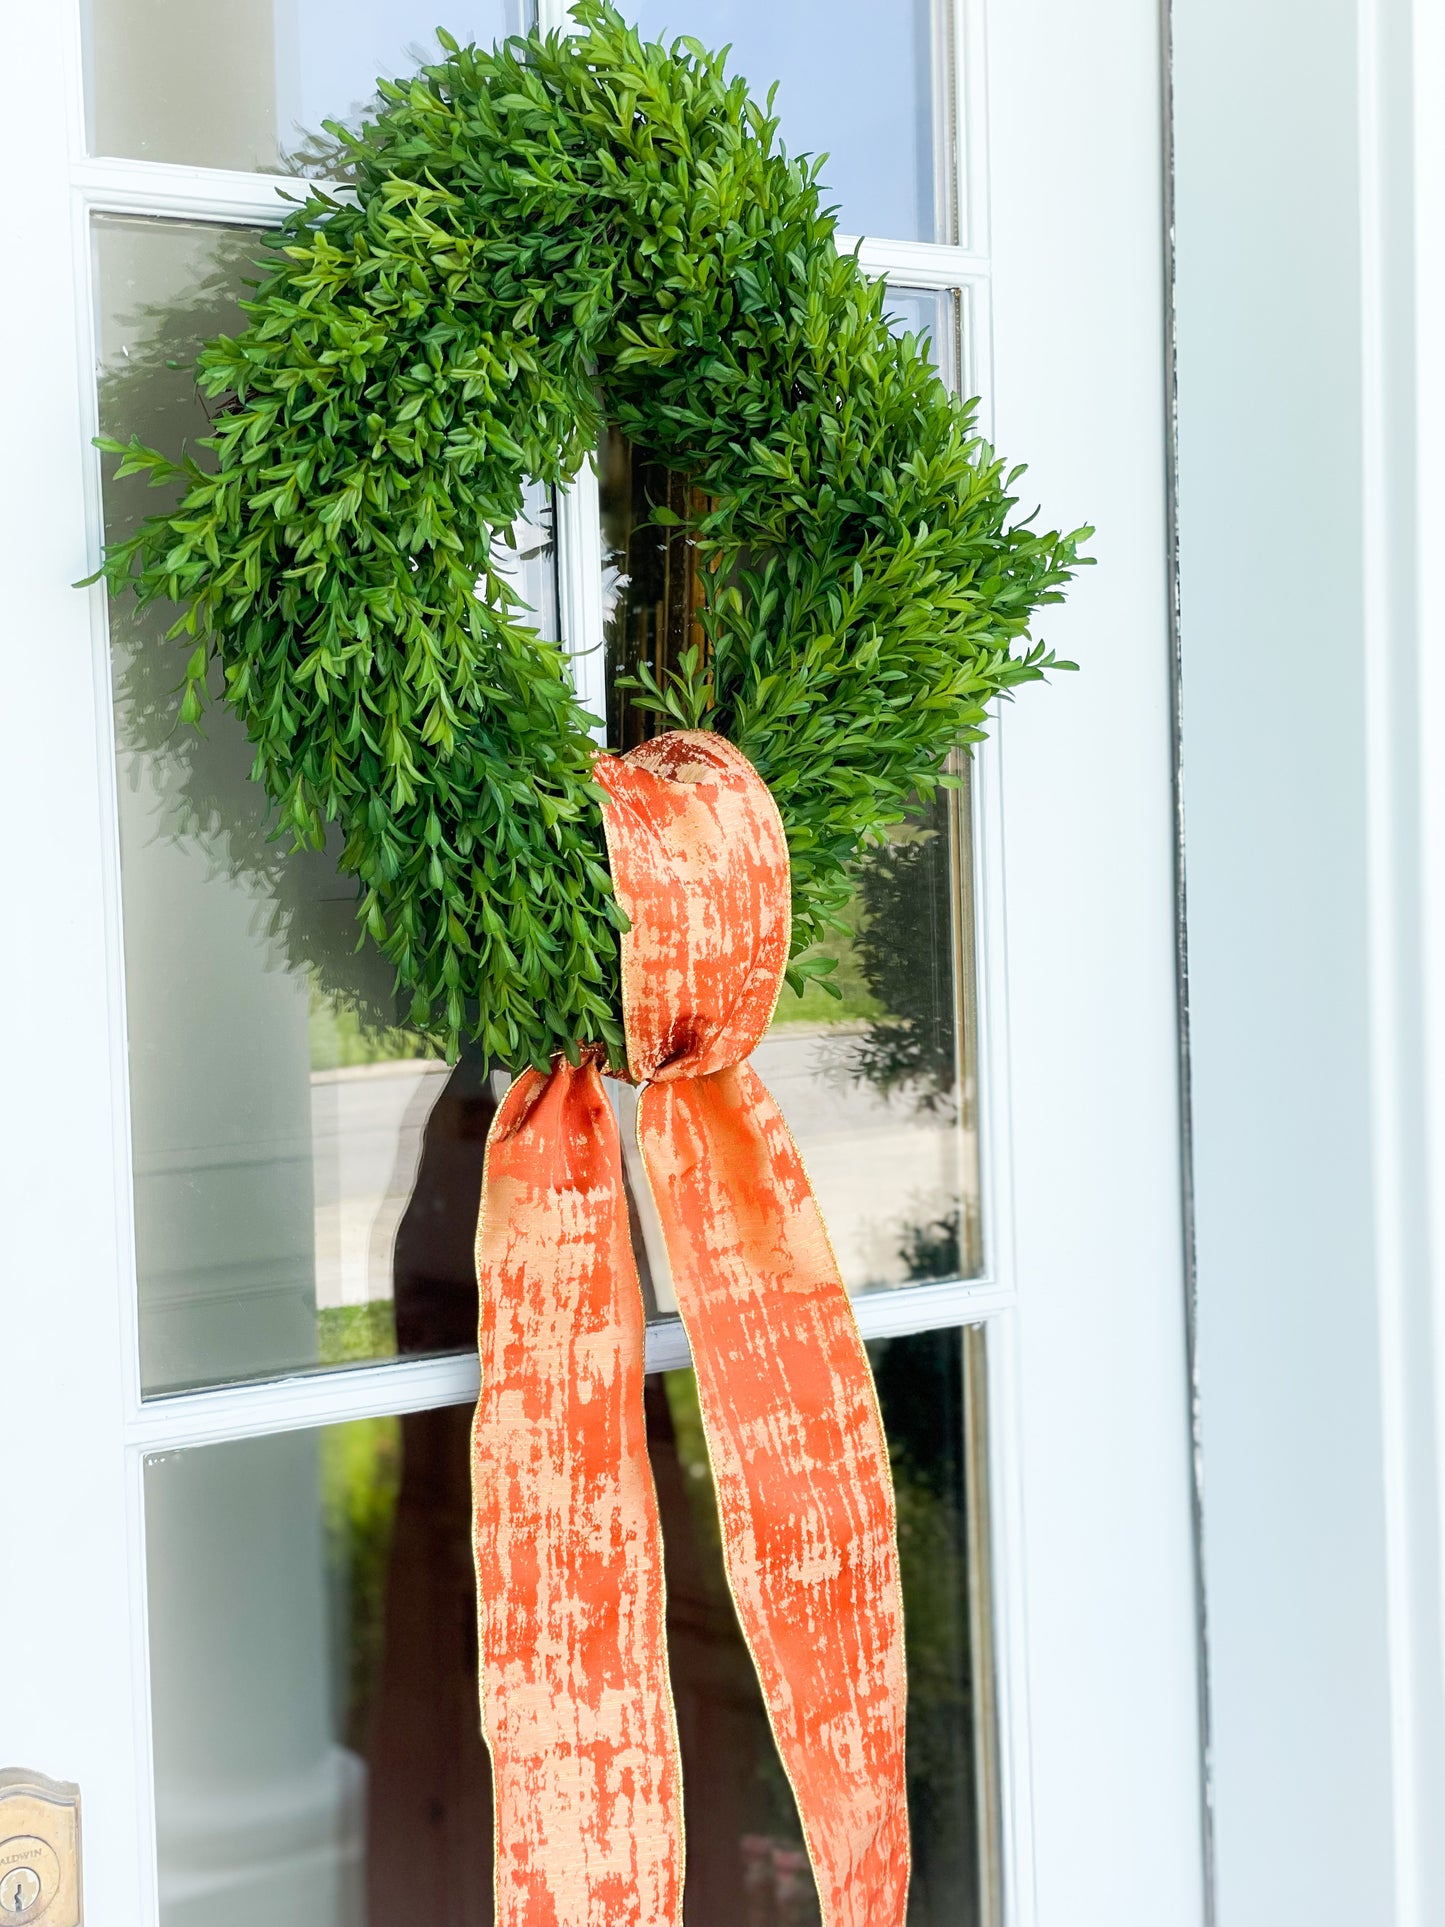 Orange Abstract Sash And Tea Leaf Wreath